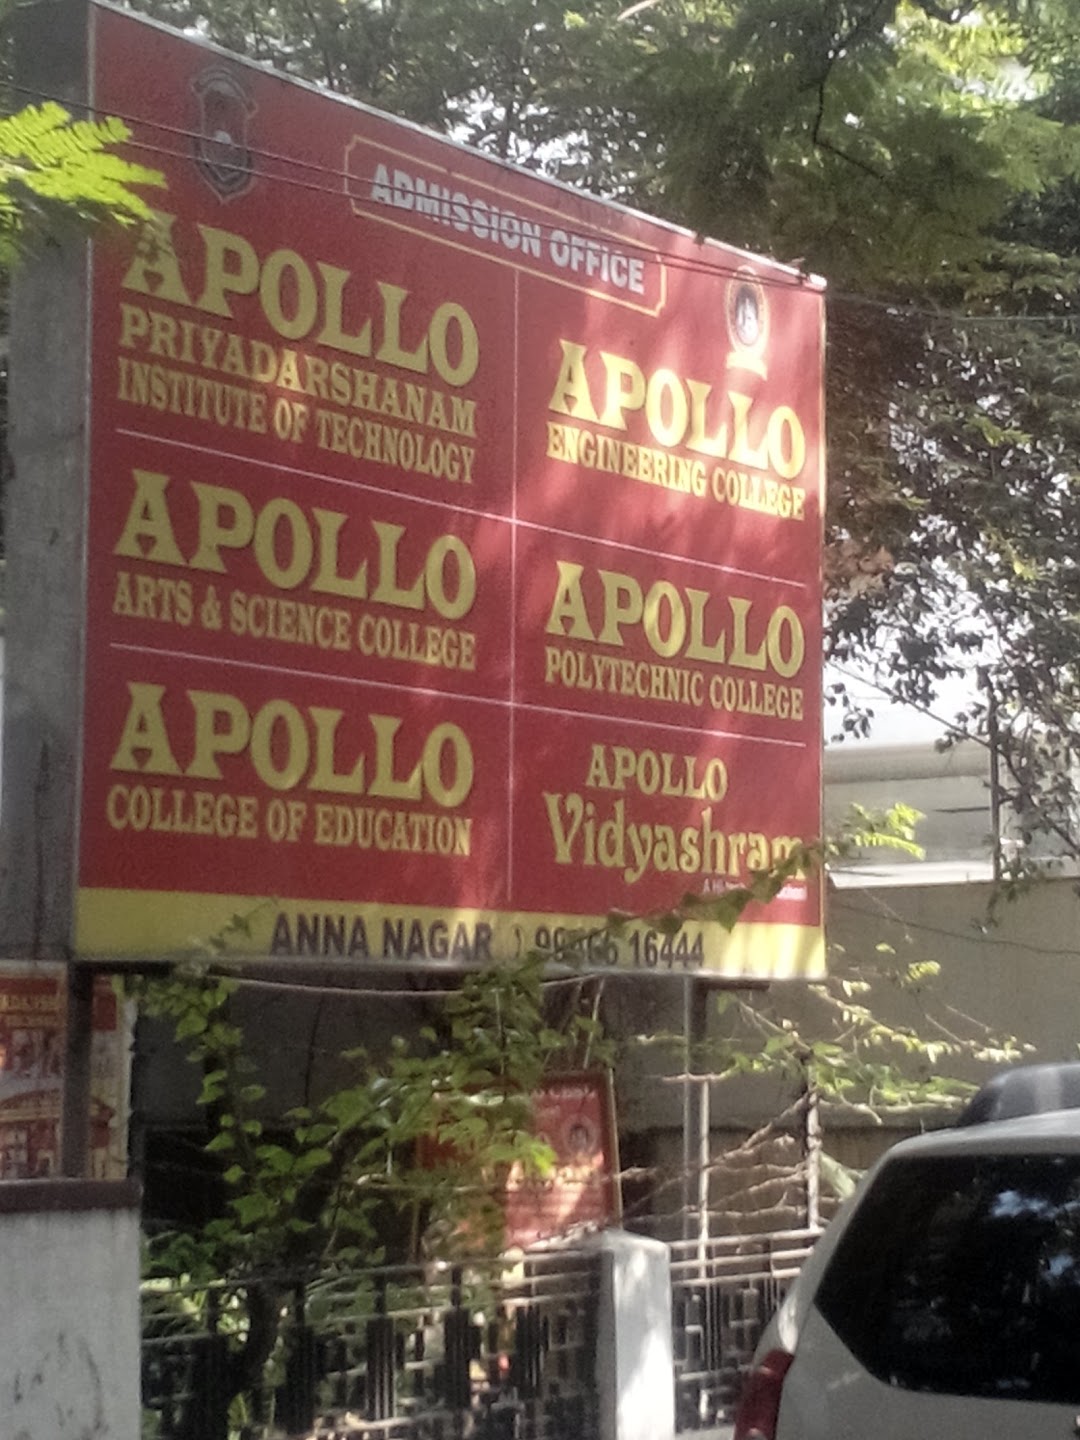 Apollo College Of Education, Anna Nagar